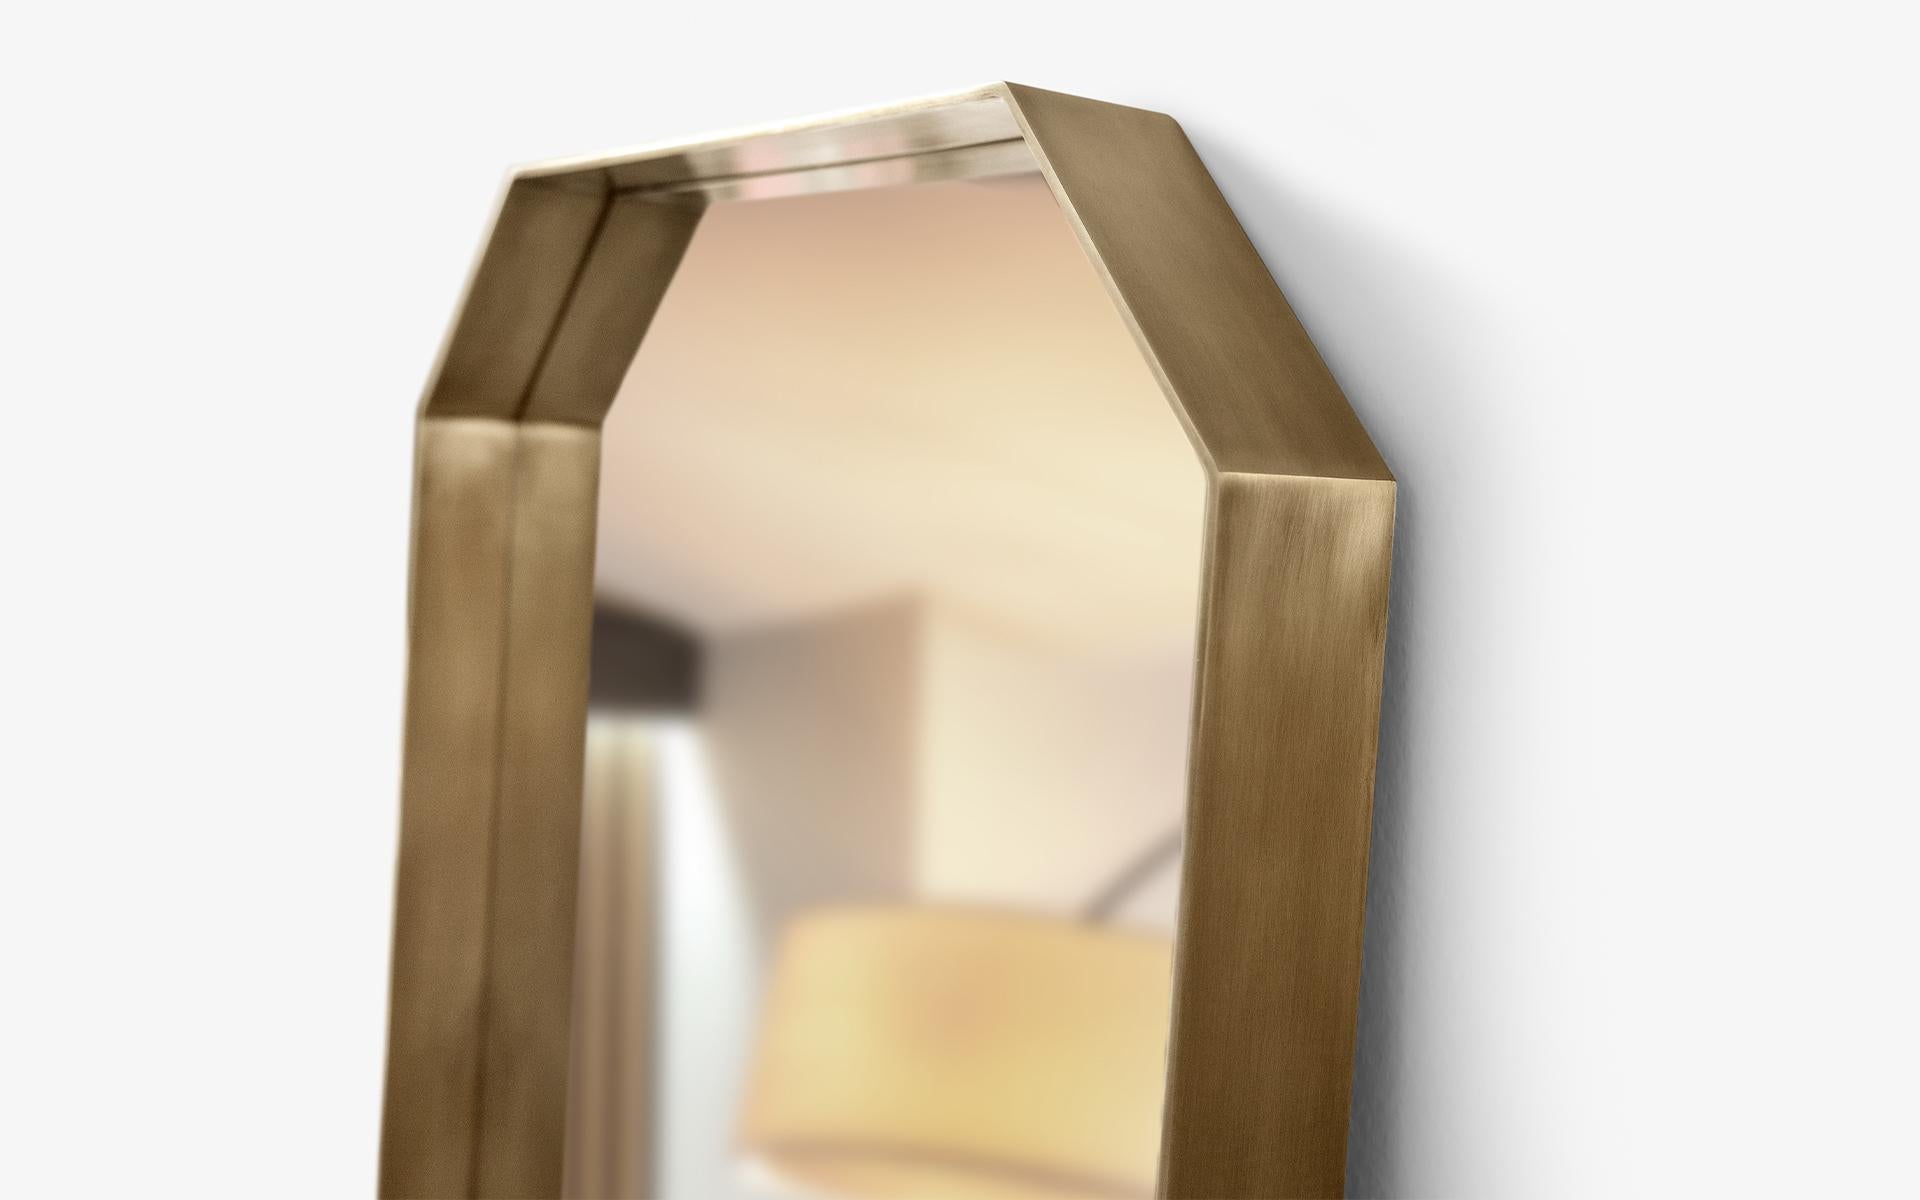 Le miroir pleine longueur Design/One se distingue des miroirs rectangulaires standard en apportant une touche unique à son design grâce à ses angles aigus. Les arêtes vives créent une esthétique équilibrée et symétrique, tandis que les tons chauds